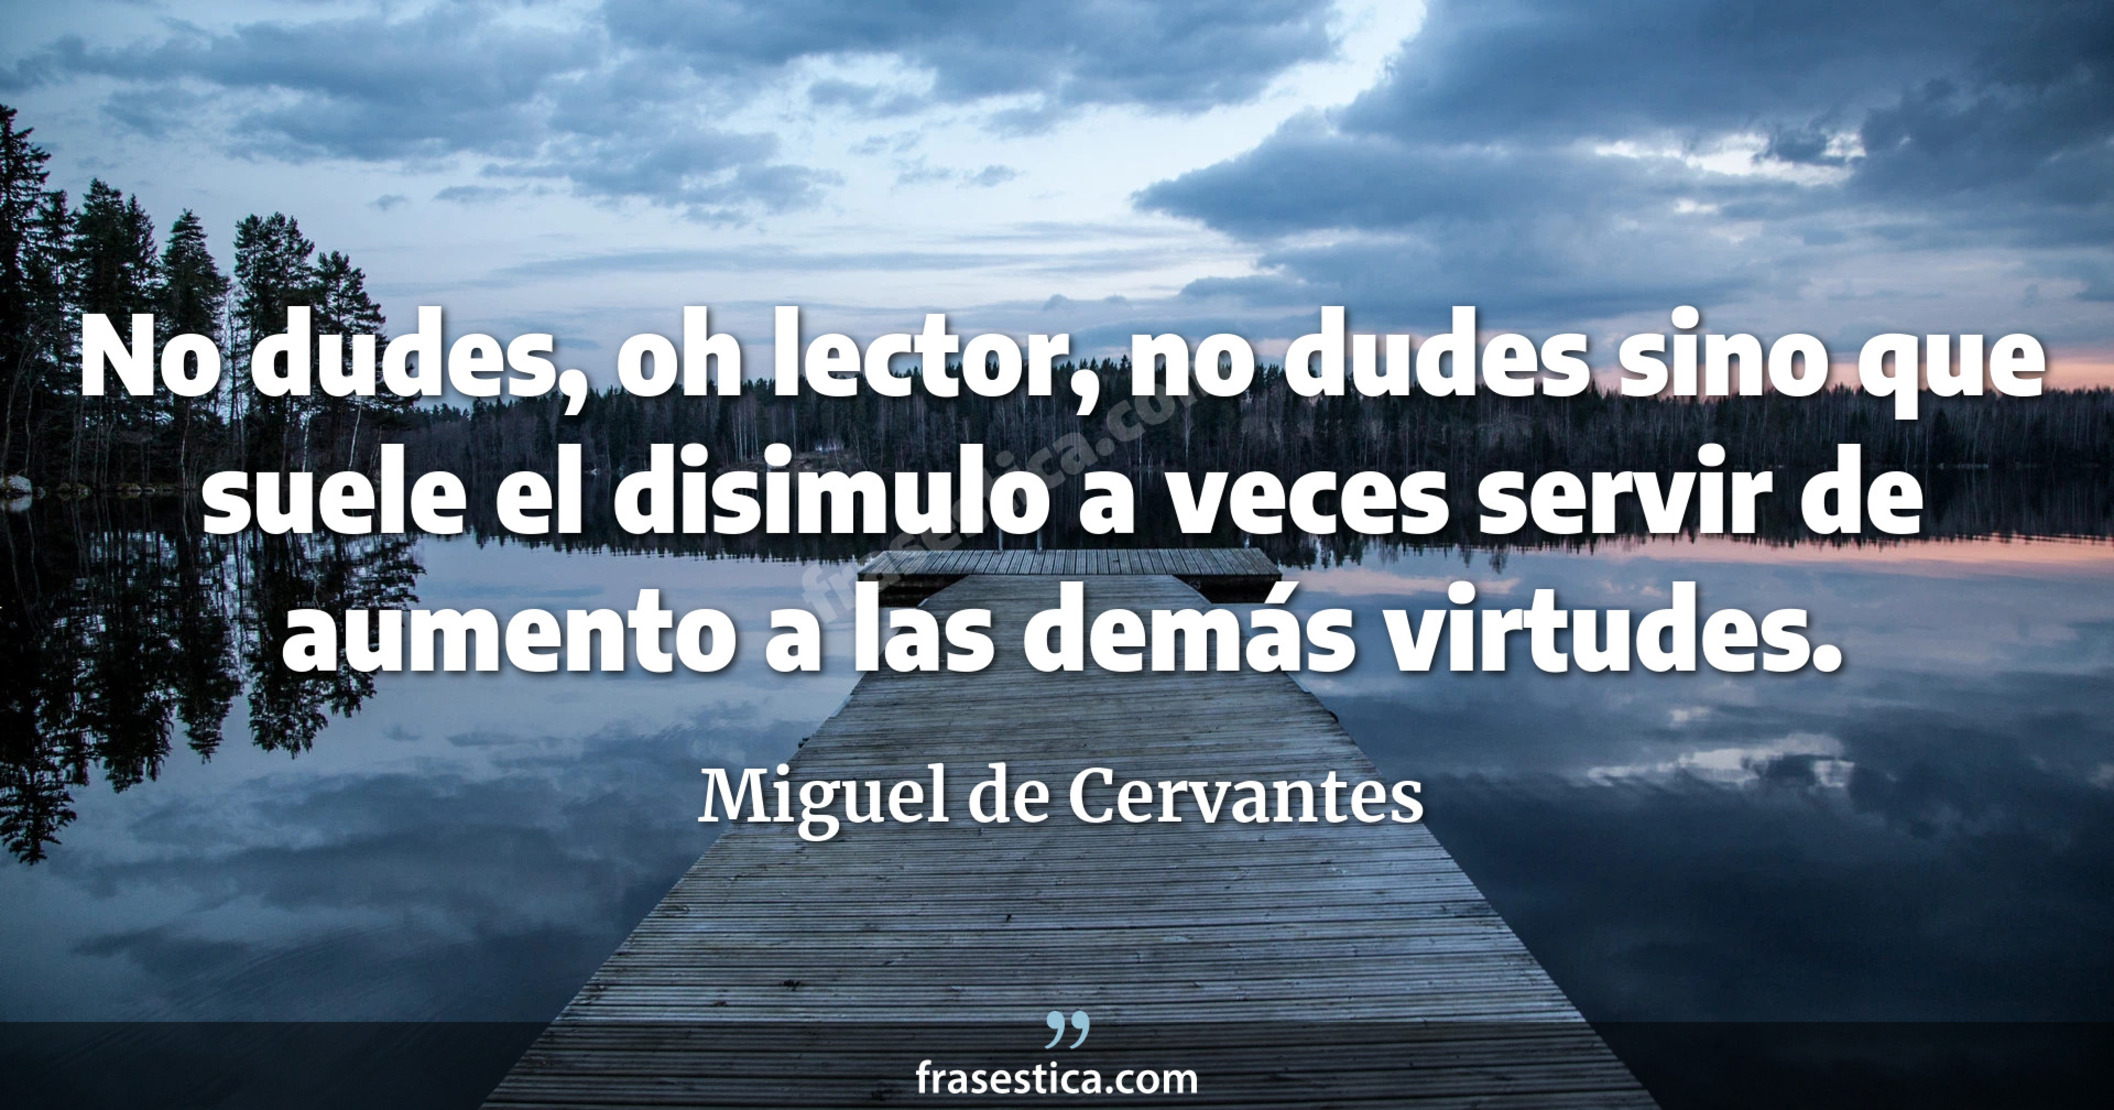 No dudes, oh lector, no dudes sino que suele el disimulo a veces servir de aumento a las demás virtudes. - Miguel de Cervantes